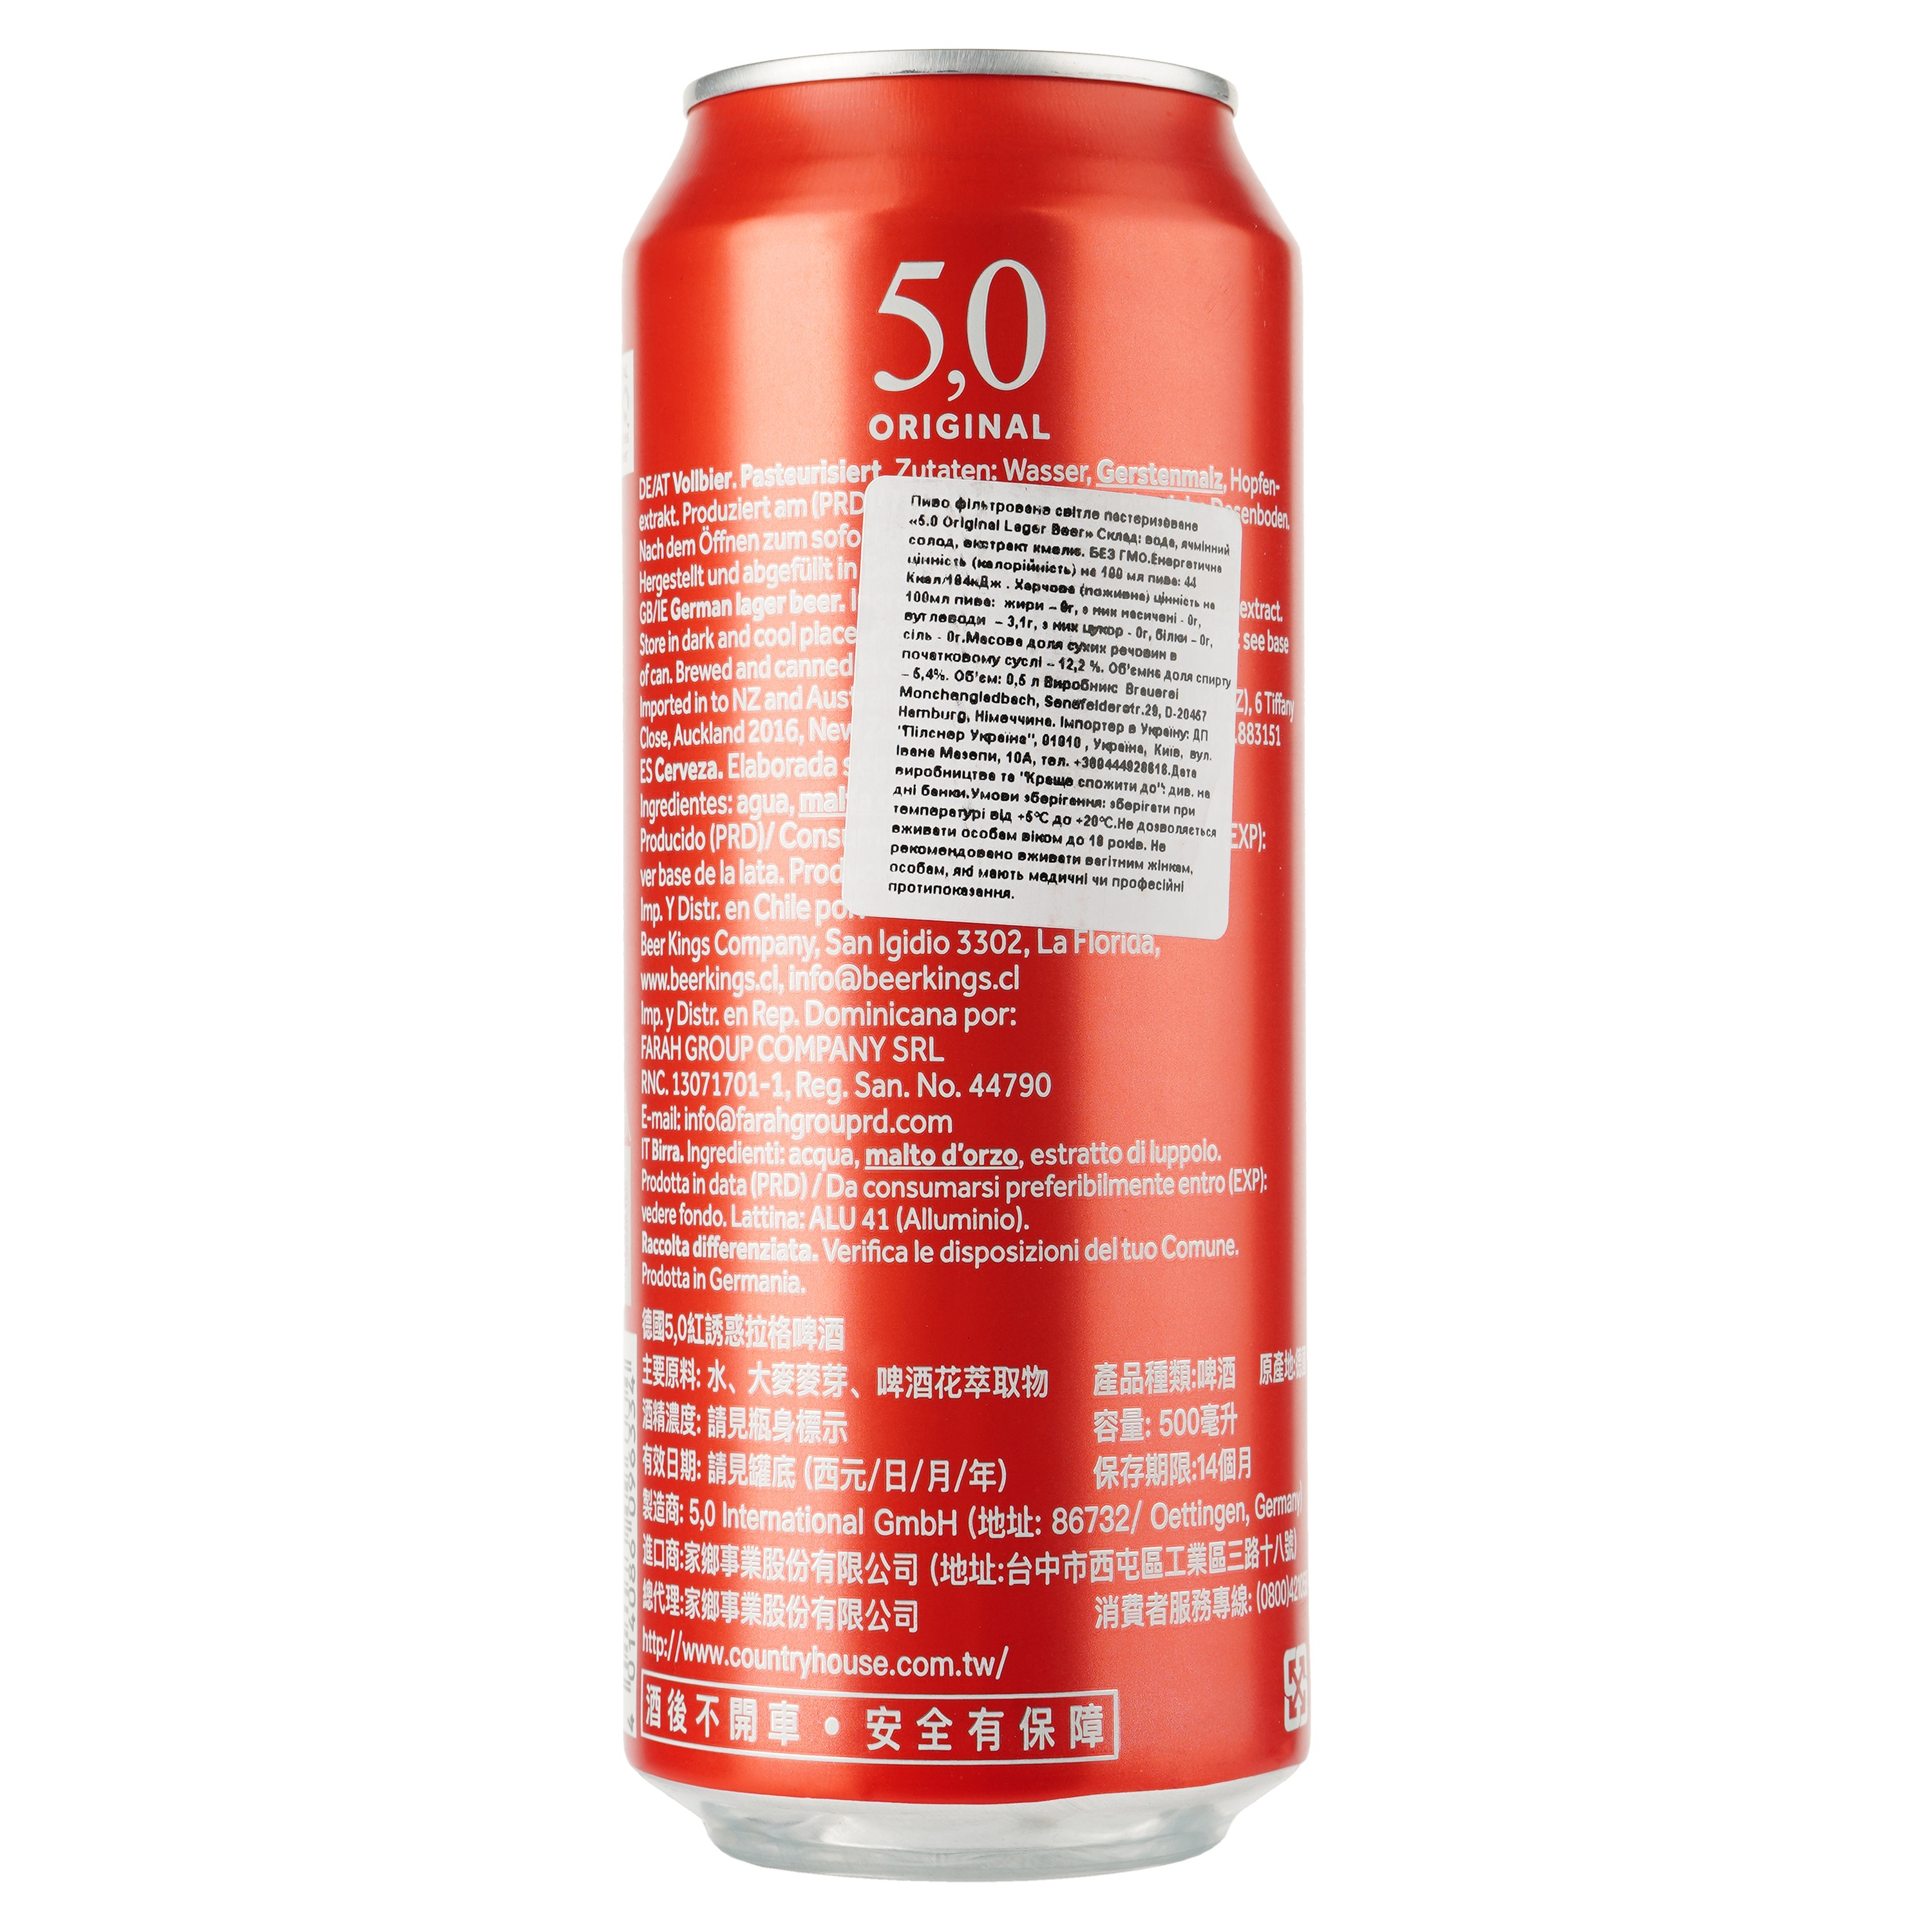 Пиво 5,0 Original Lager, светлое, фильтрованное, 5,4%, ж/б, 0,5 л - фото 2